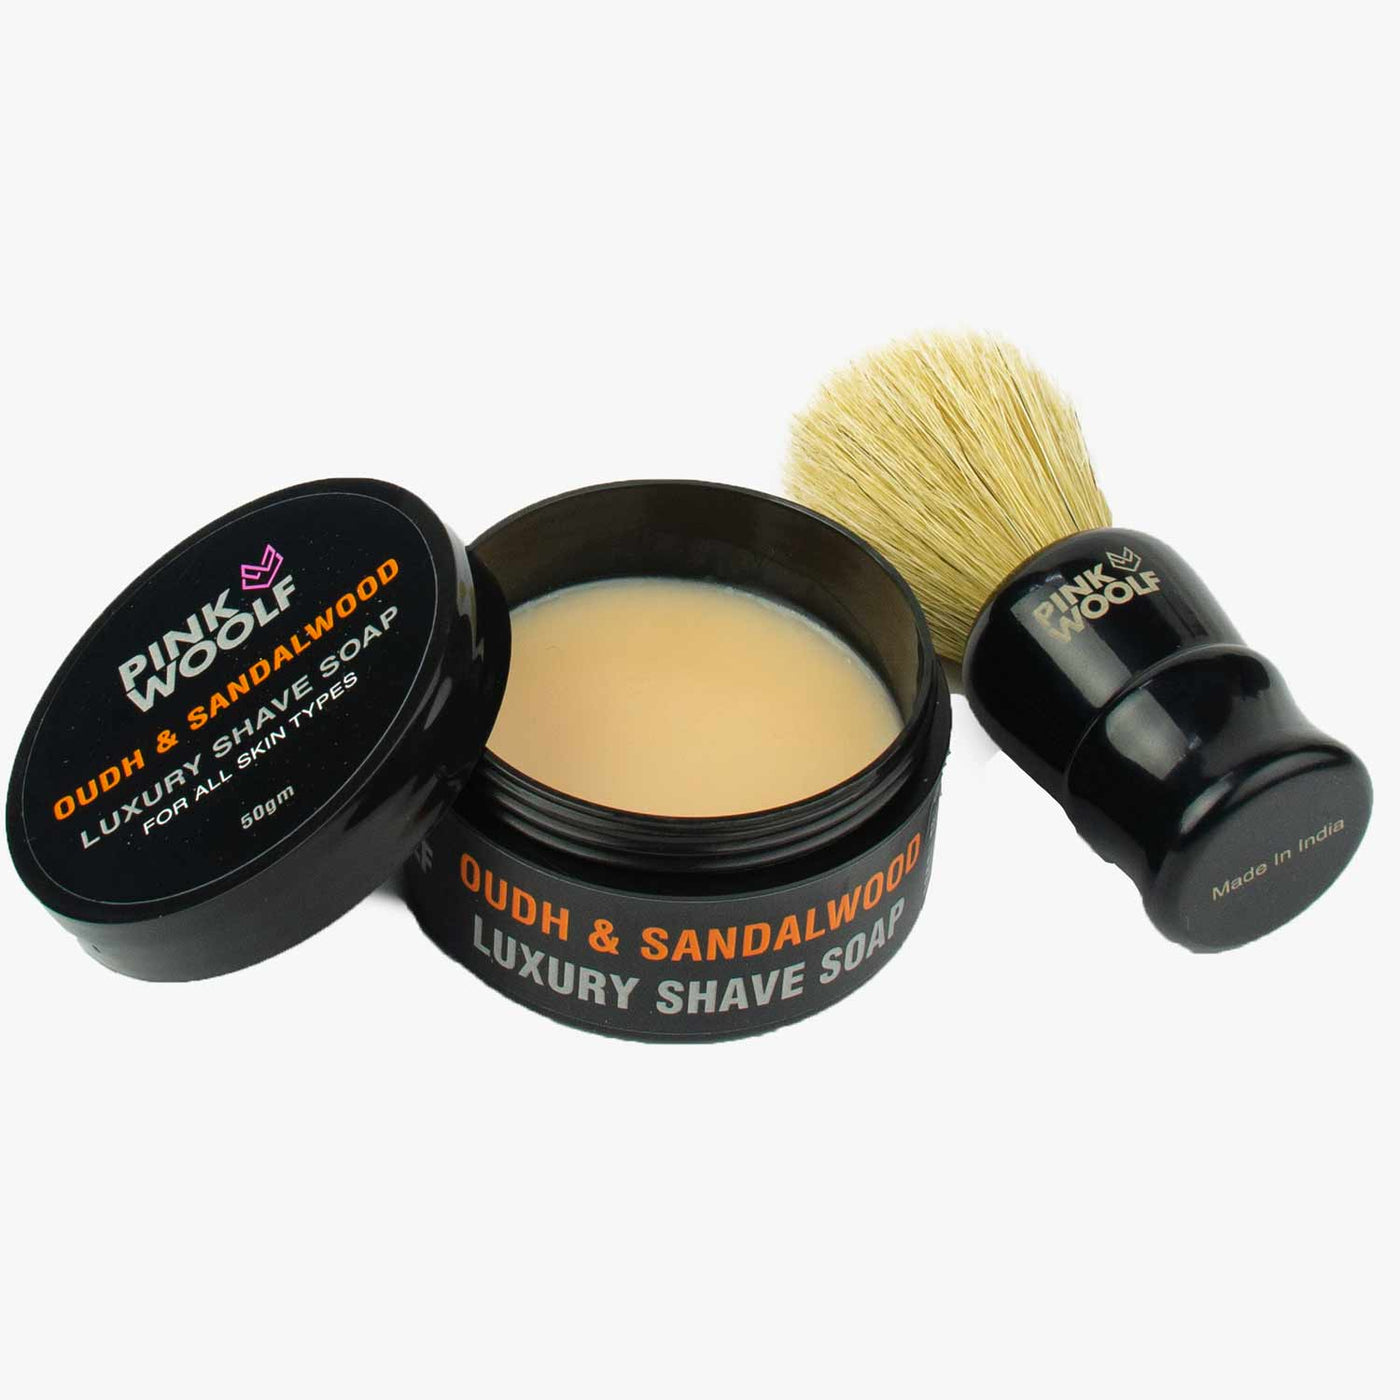 Boar Shaving Brush and Shaving Soap Gift Pack COMBO - Shaving & GroomingPinkWoolf